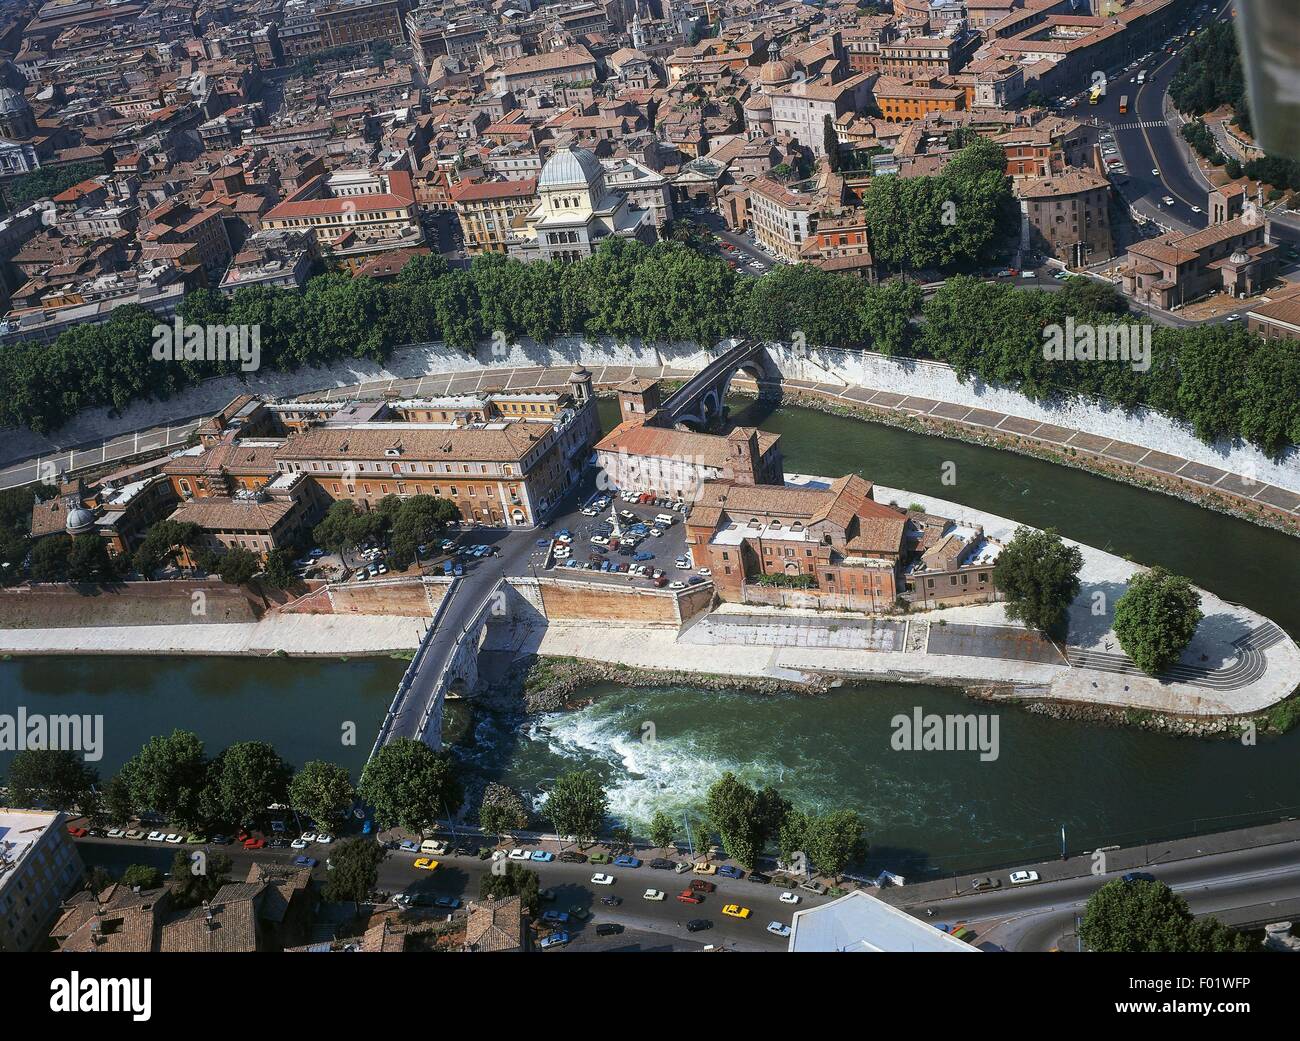 Vue aérienne de Rome, Isola Tiberina (Chapelle Sixtine) avec des ponts Fabrizio et Ponte Cestio - Région du Latium, Italie Banque D'Images